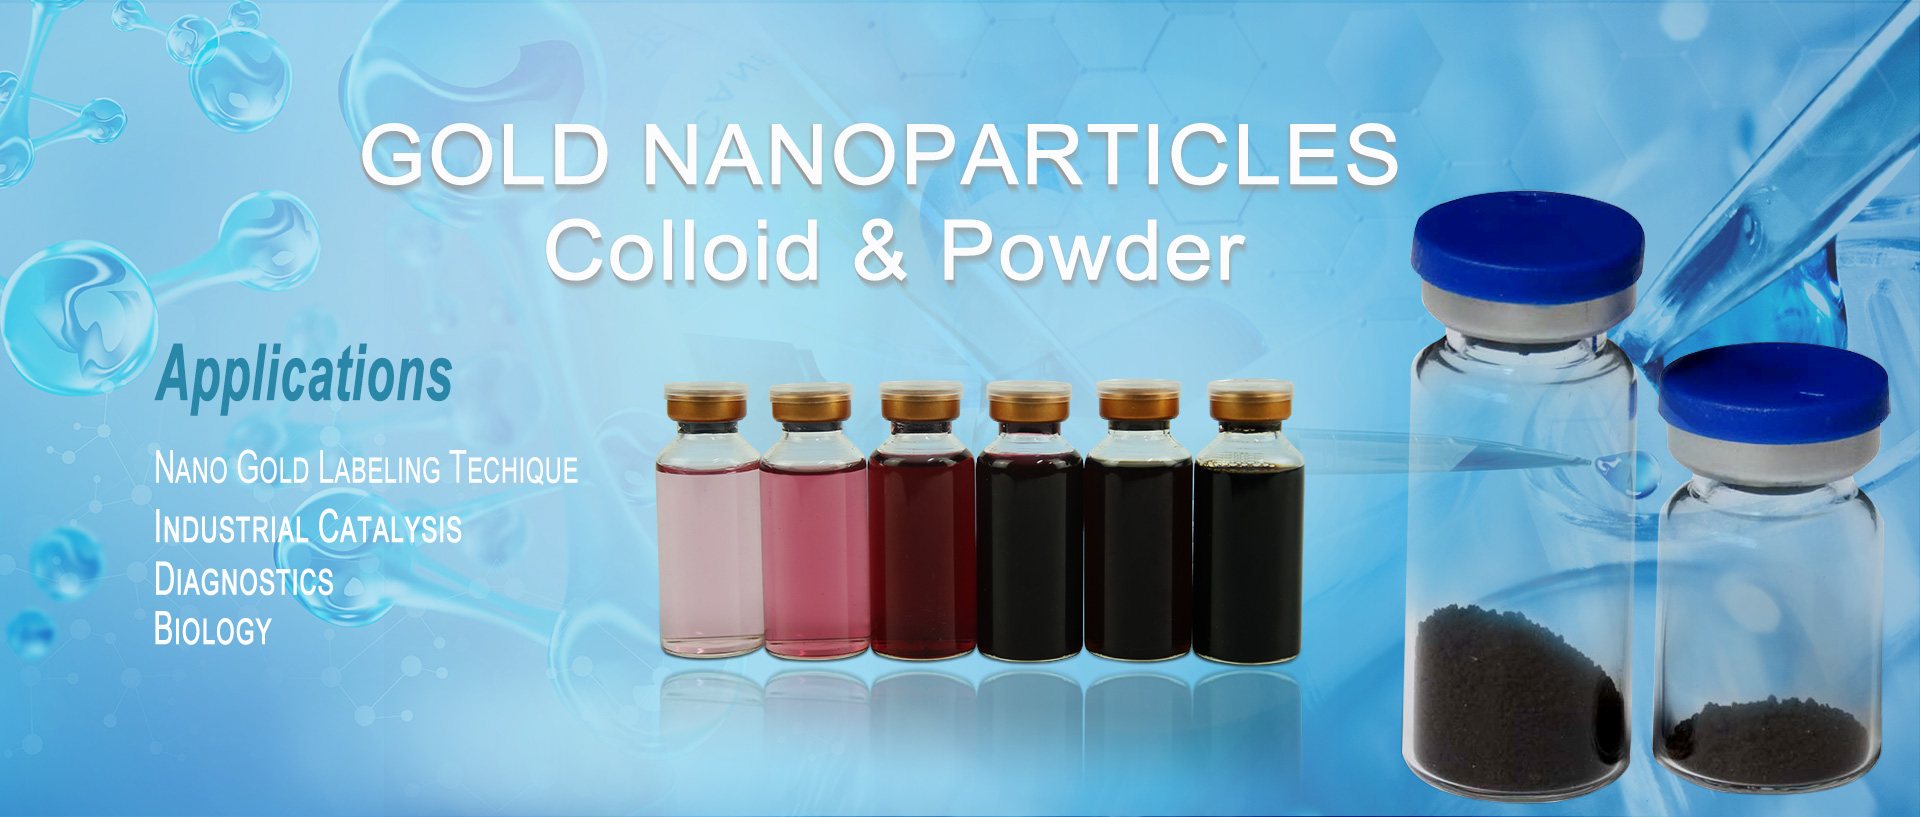 nanoparticles za dhahabu